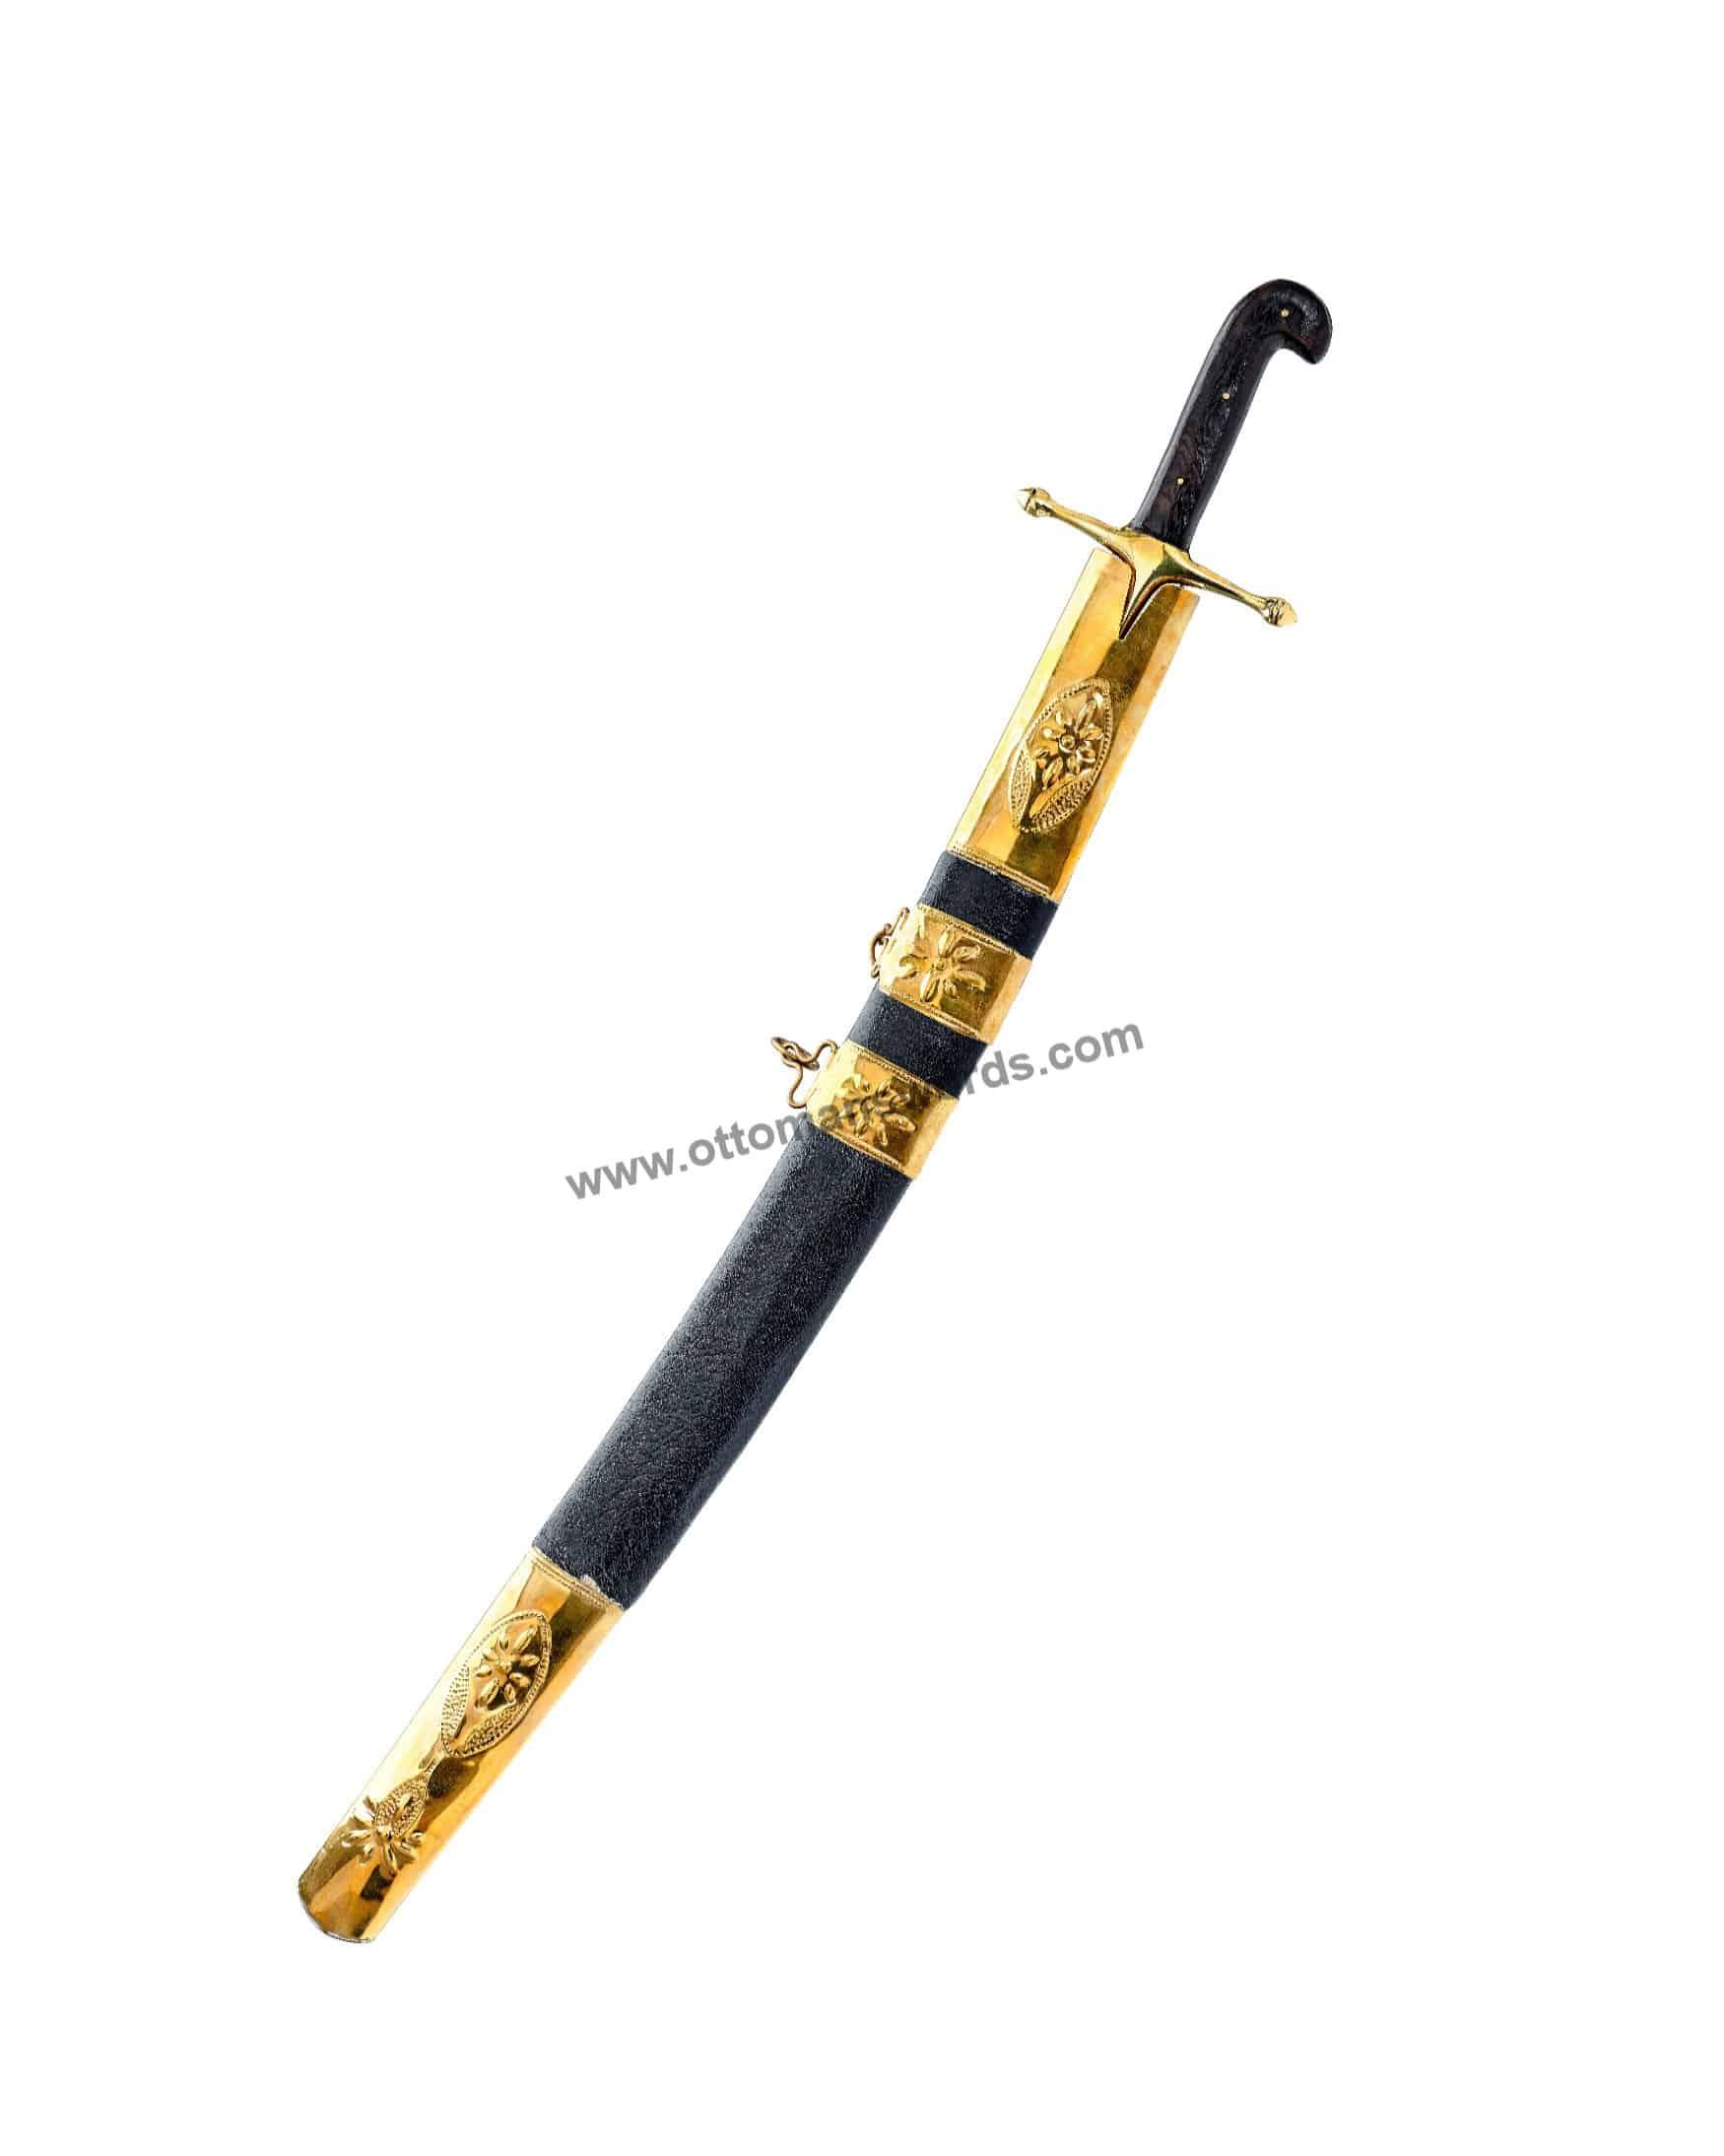 kilij sword for sale (3)